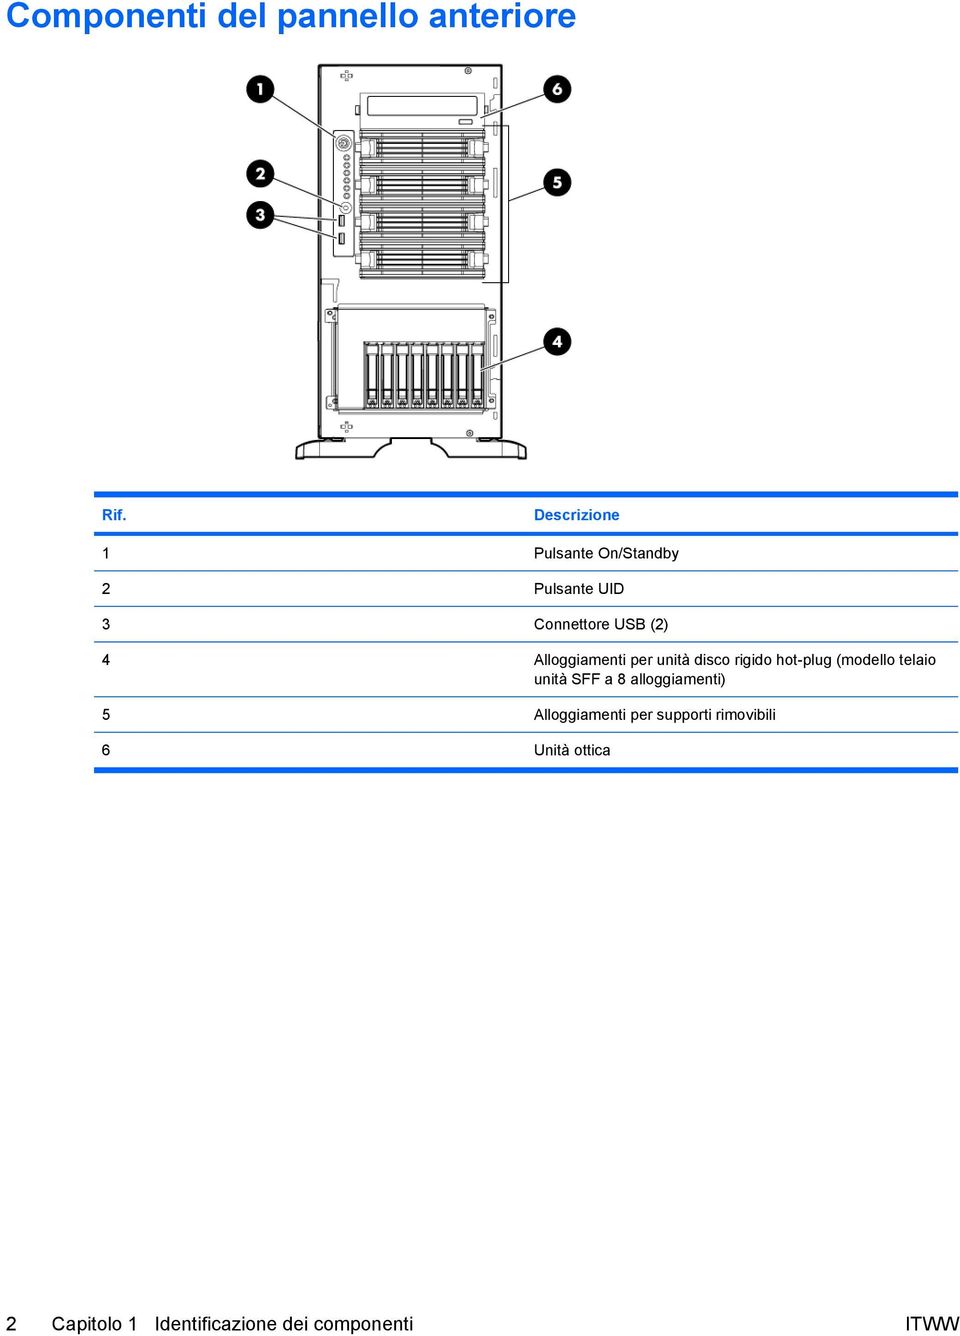 Alloggiamenti per unità disco rigido hot-plug (modello telaio unità SFF a 8